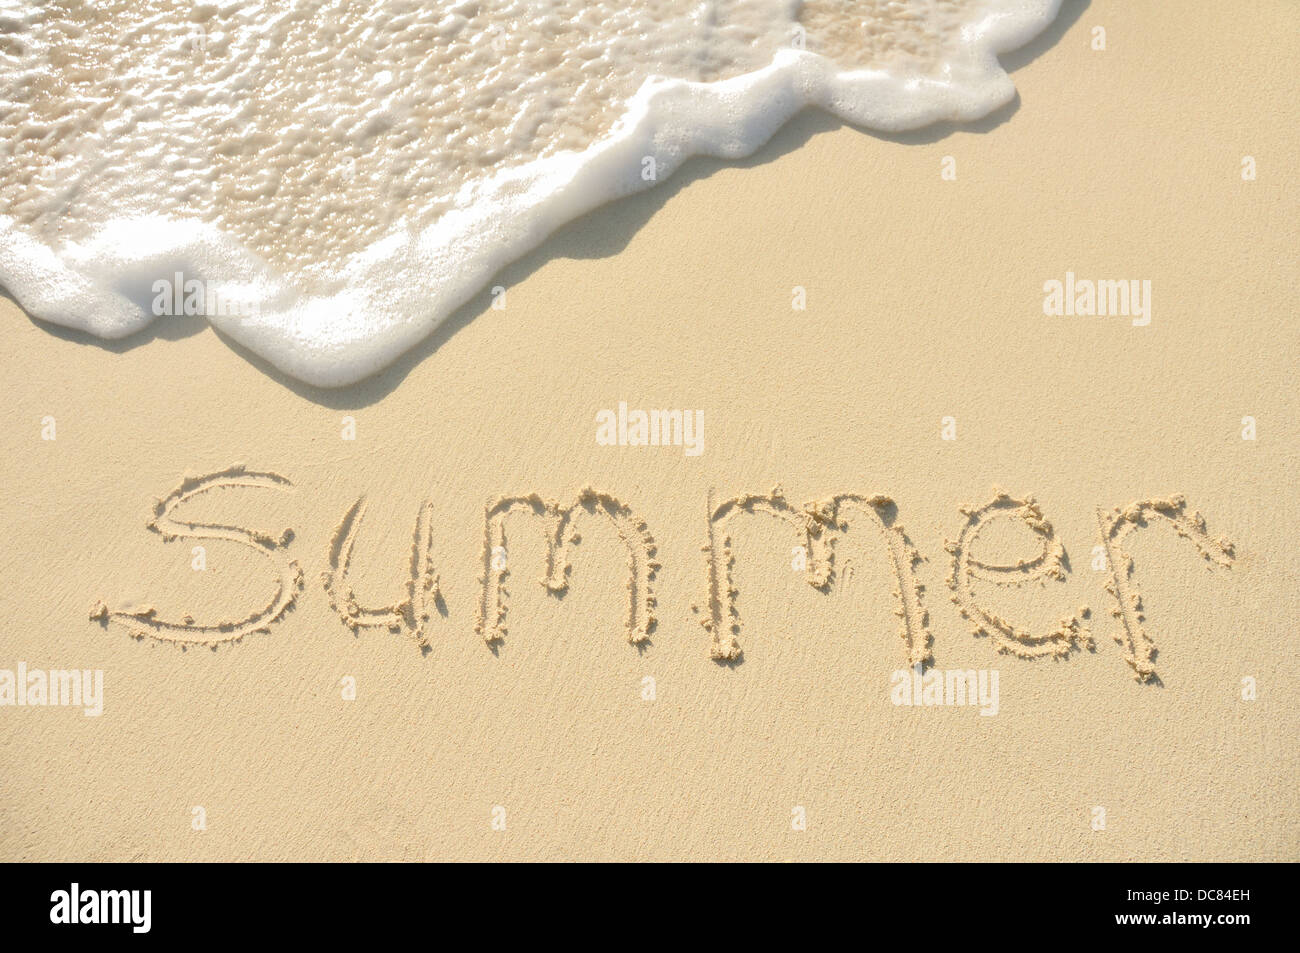 La palabra escrita en el verano en una playa de arena Foto de stock